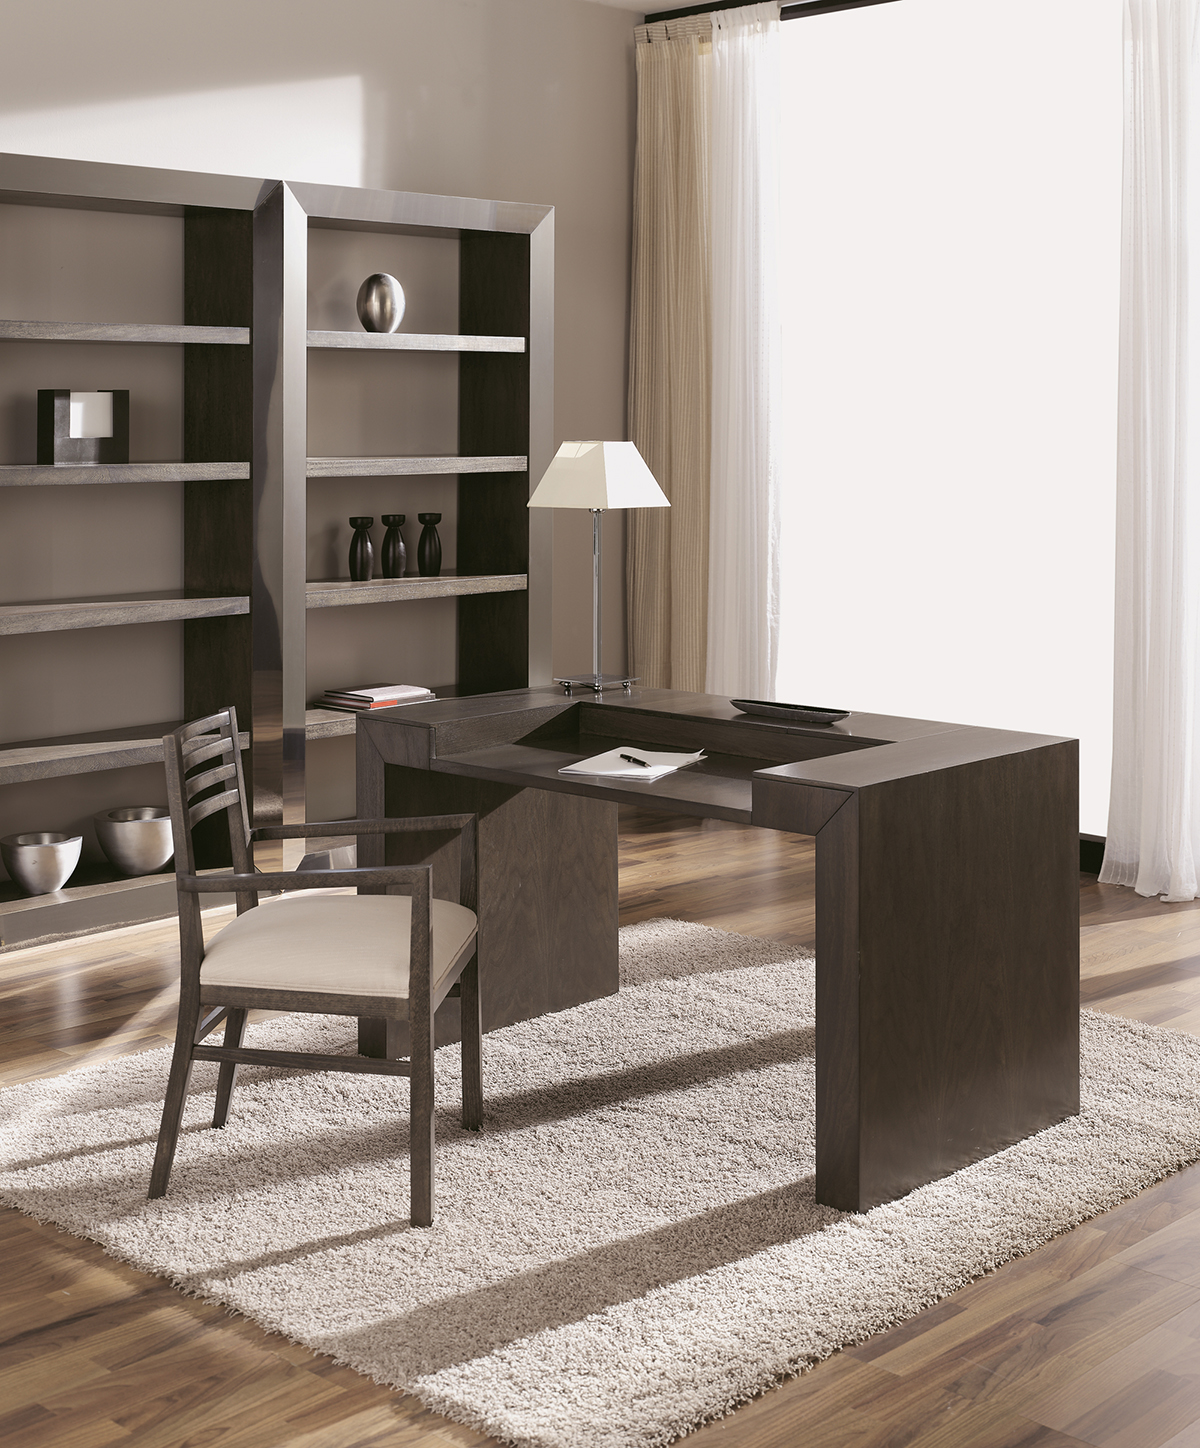 artes-moble-ref-t776-escritorio